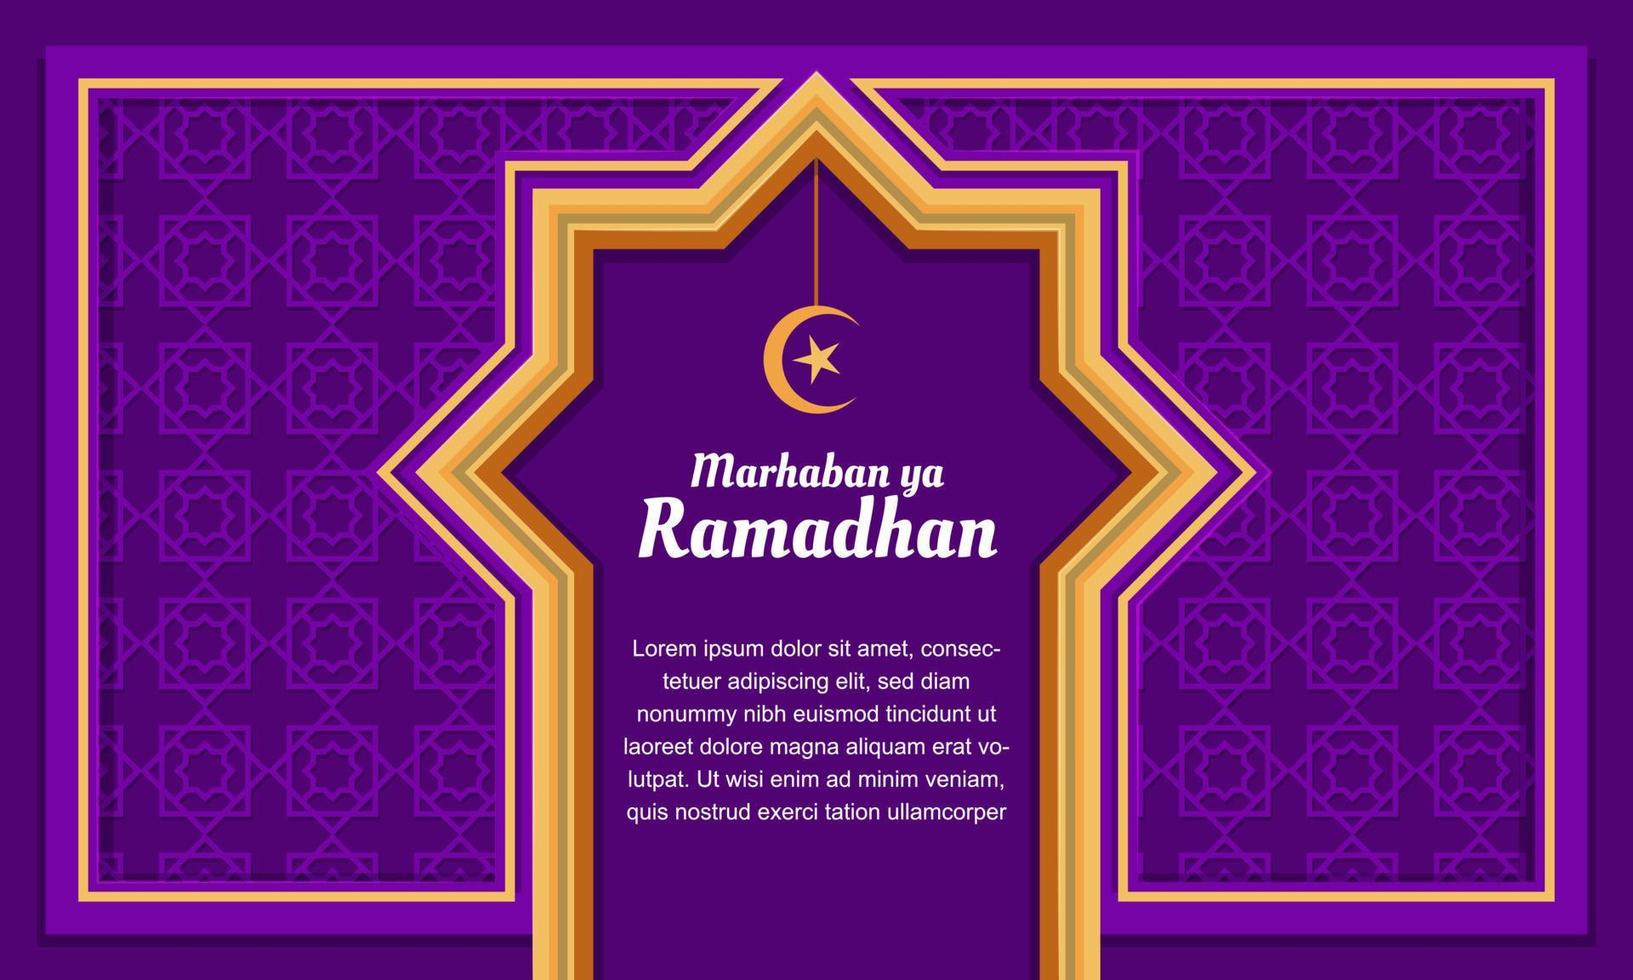 islamisch Hintergrund Dekoration Gruß Marhaban ya Ramadhan welche meint herzlich willkommen Ramadhan vektor